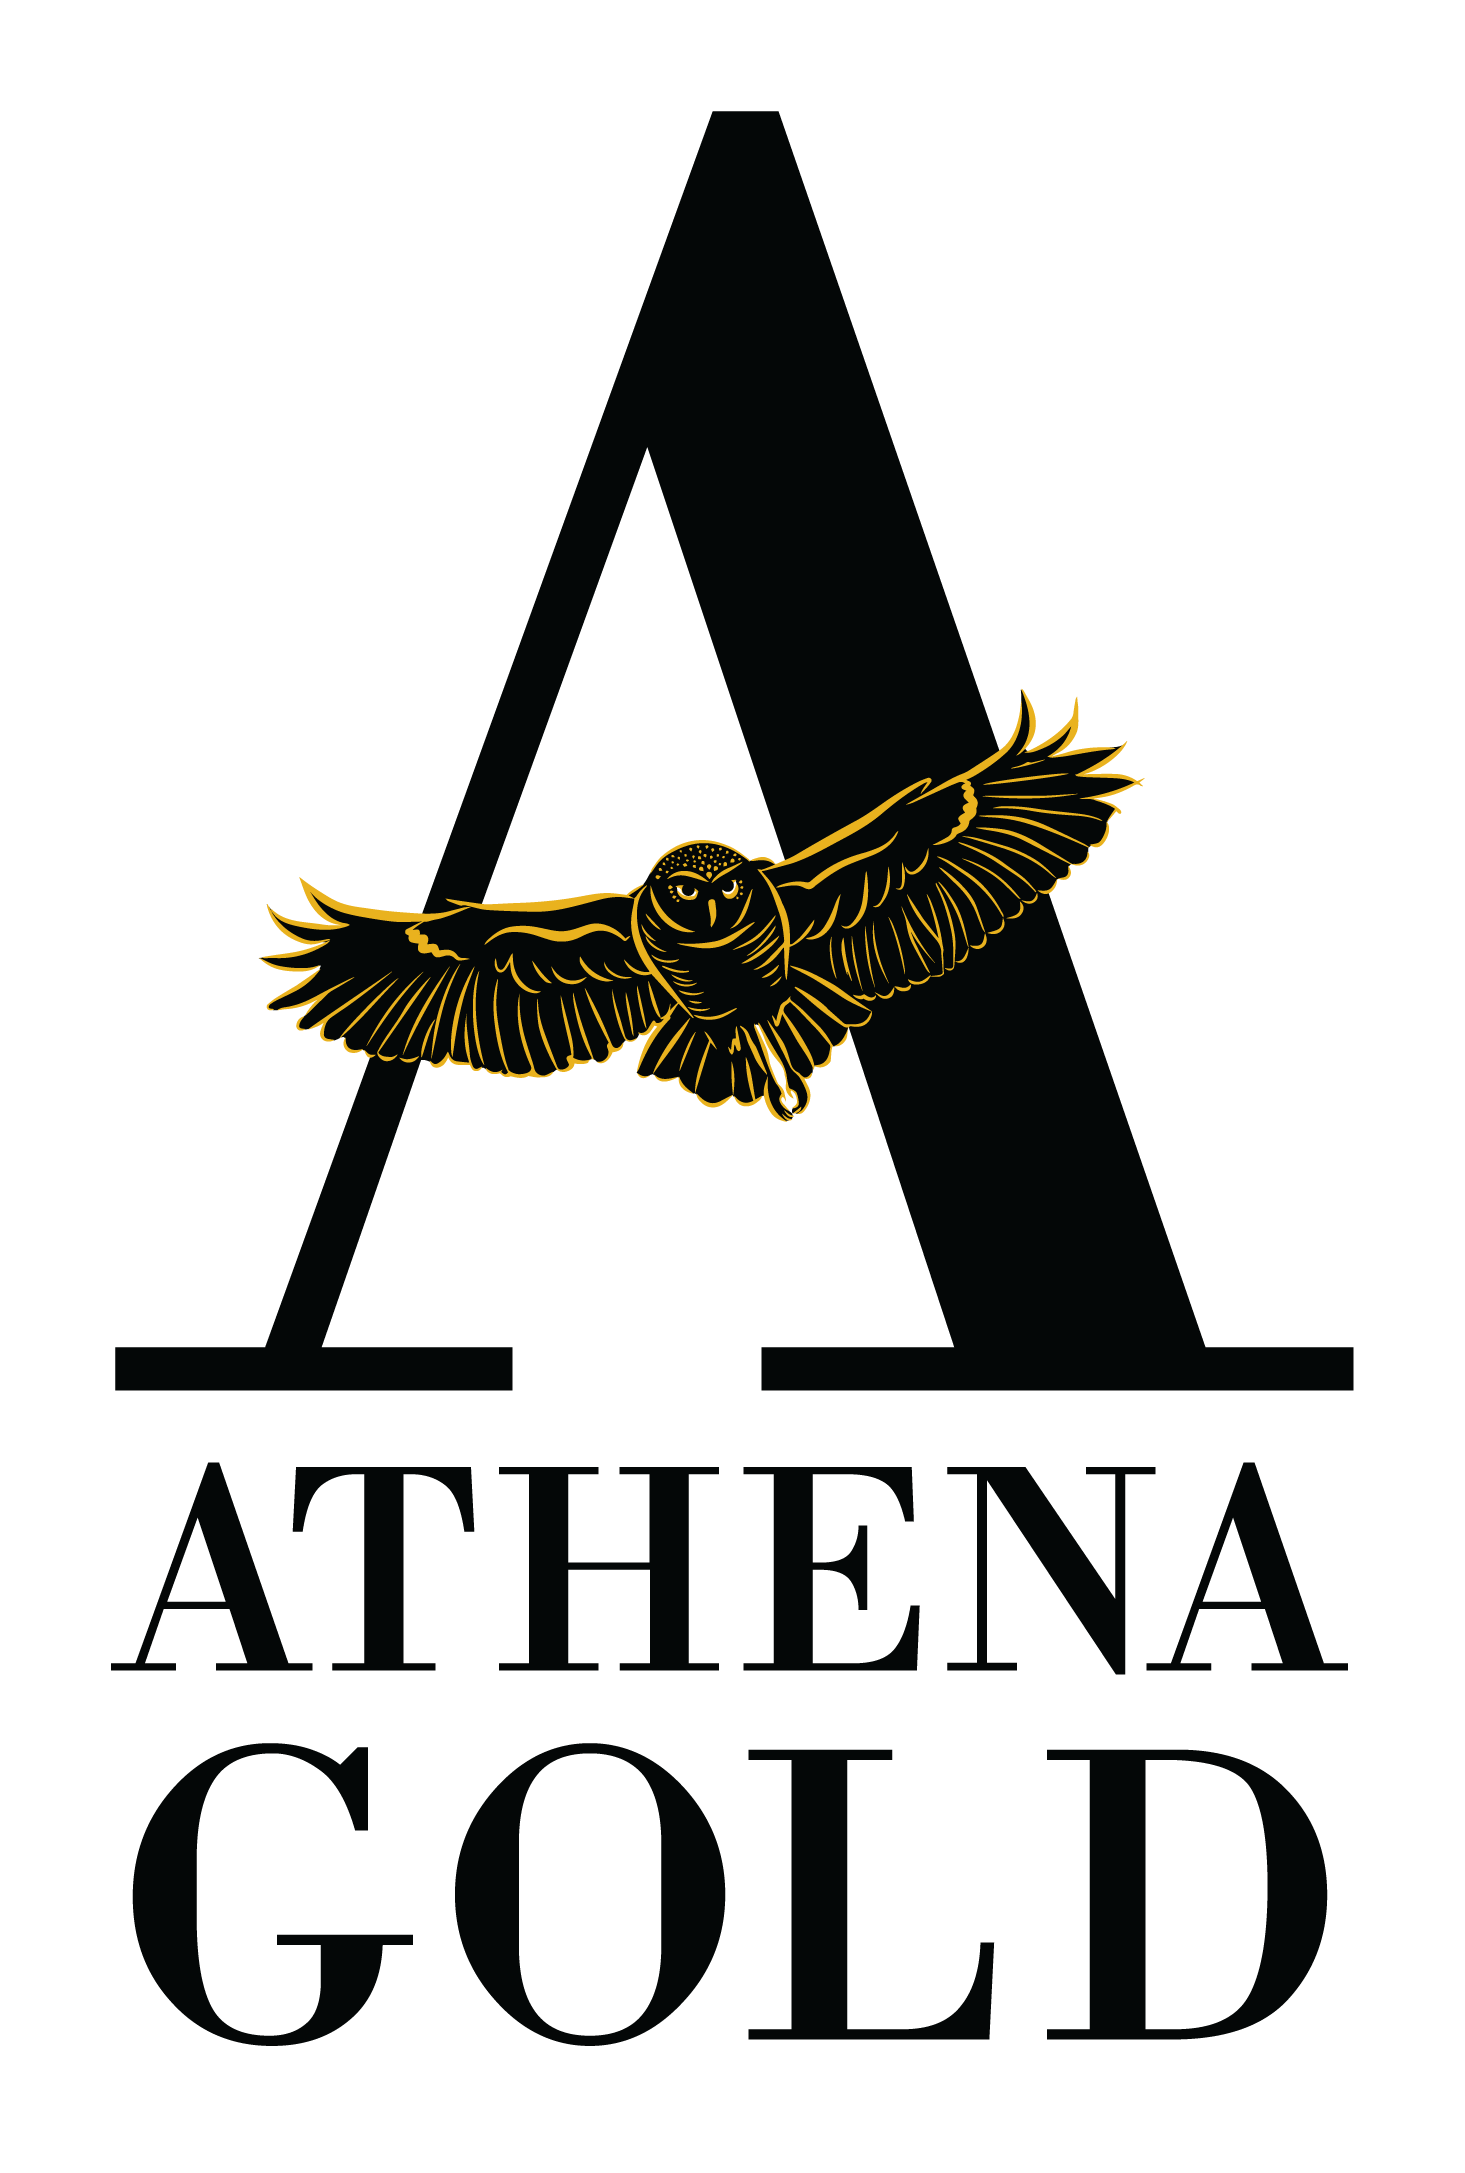 Athena Gold Corporation, Thursday, April 15, 2021, Press release picture